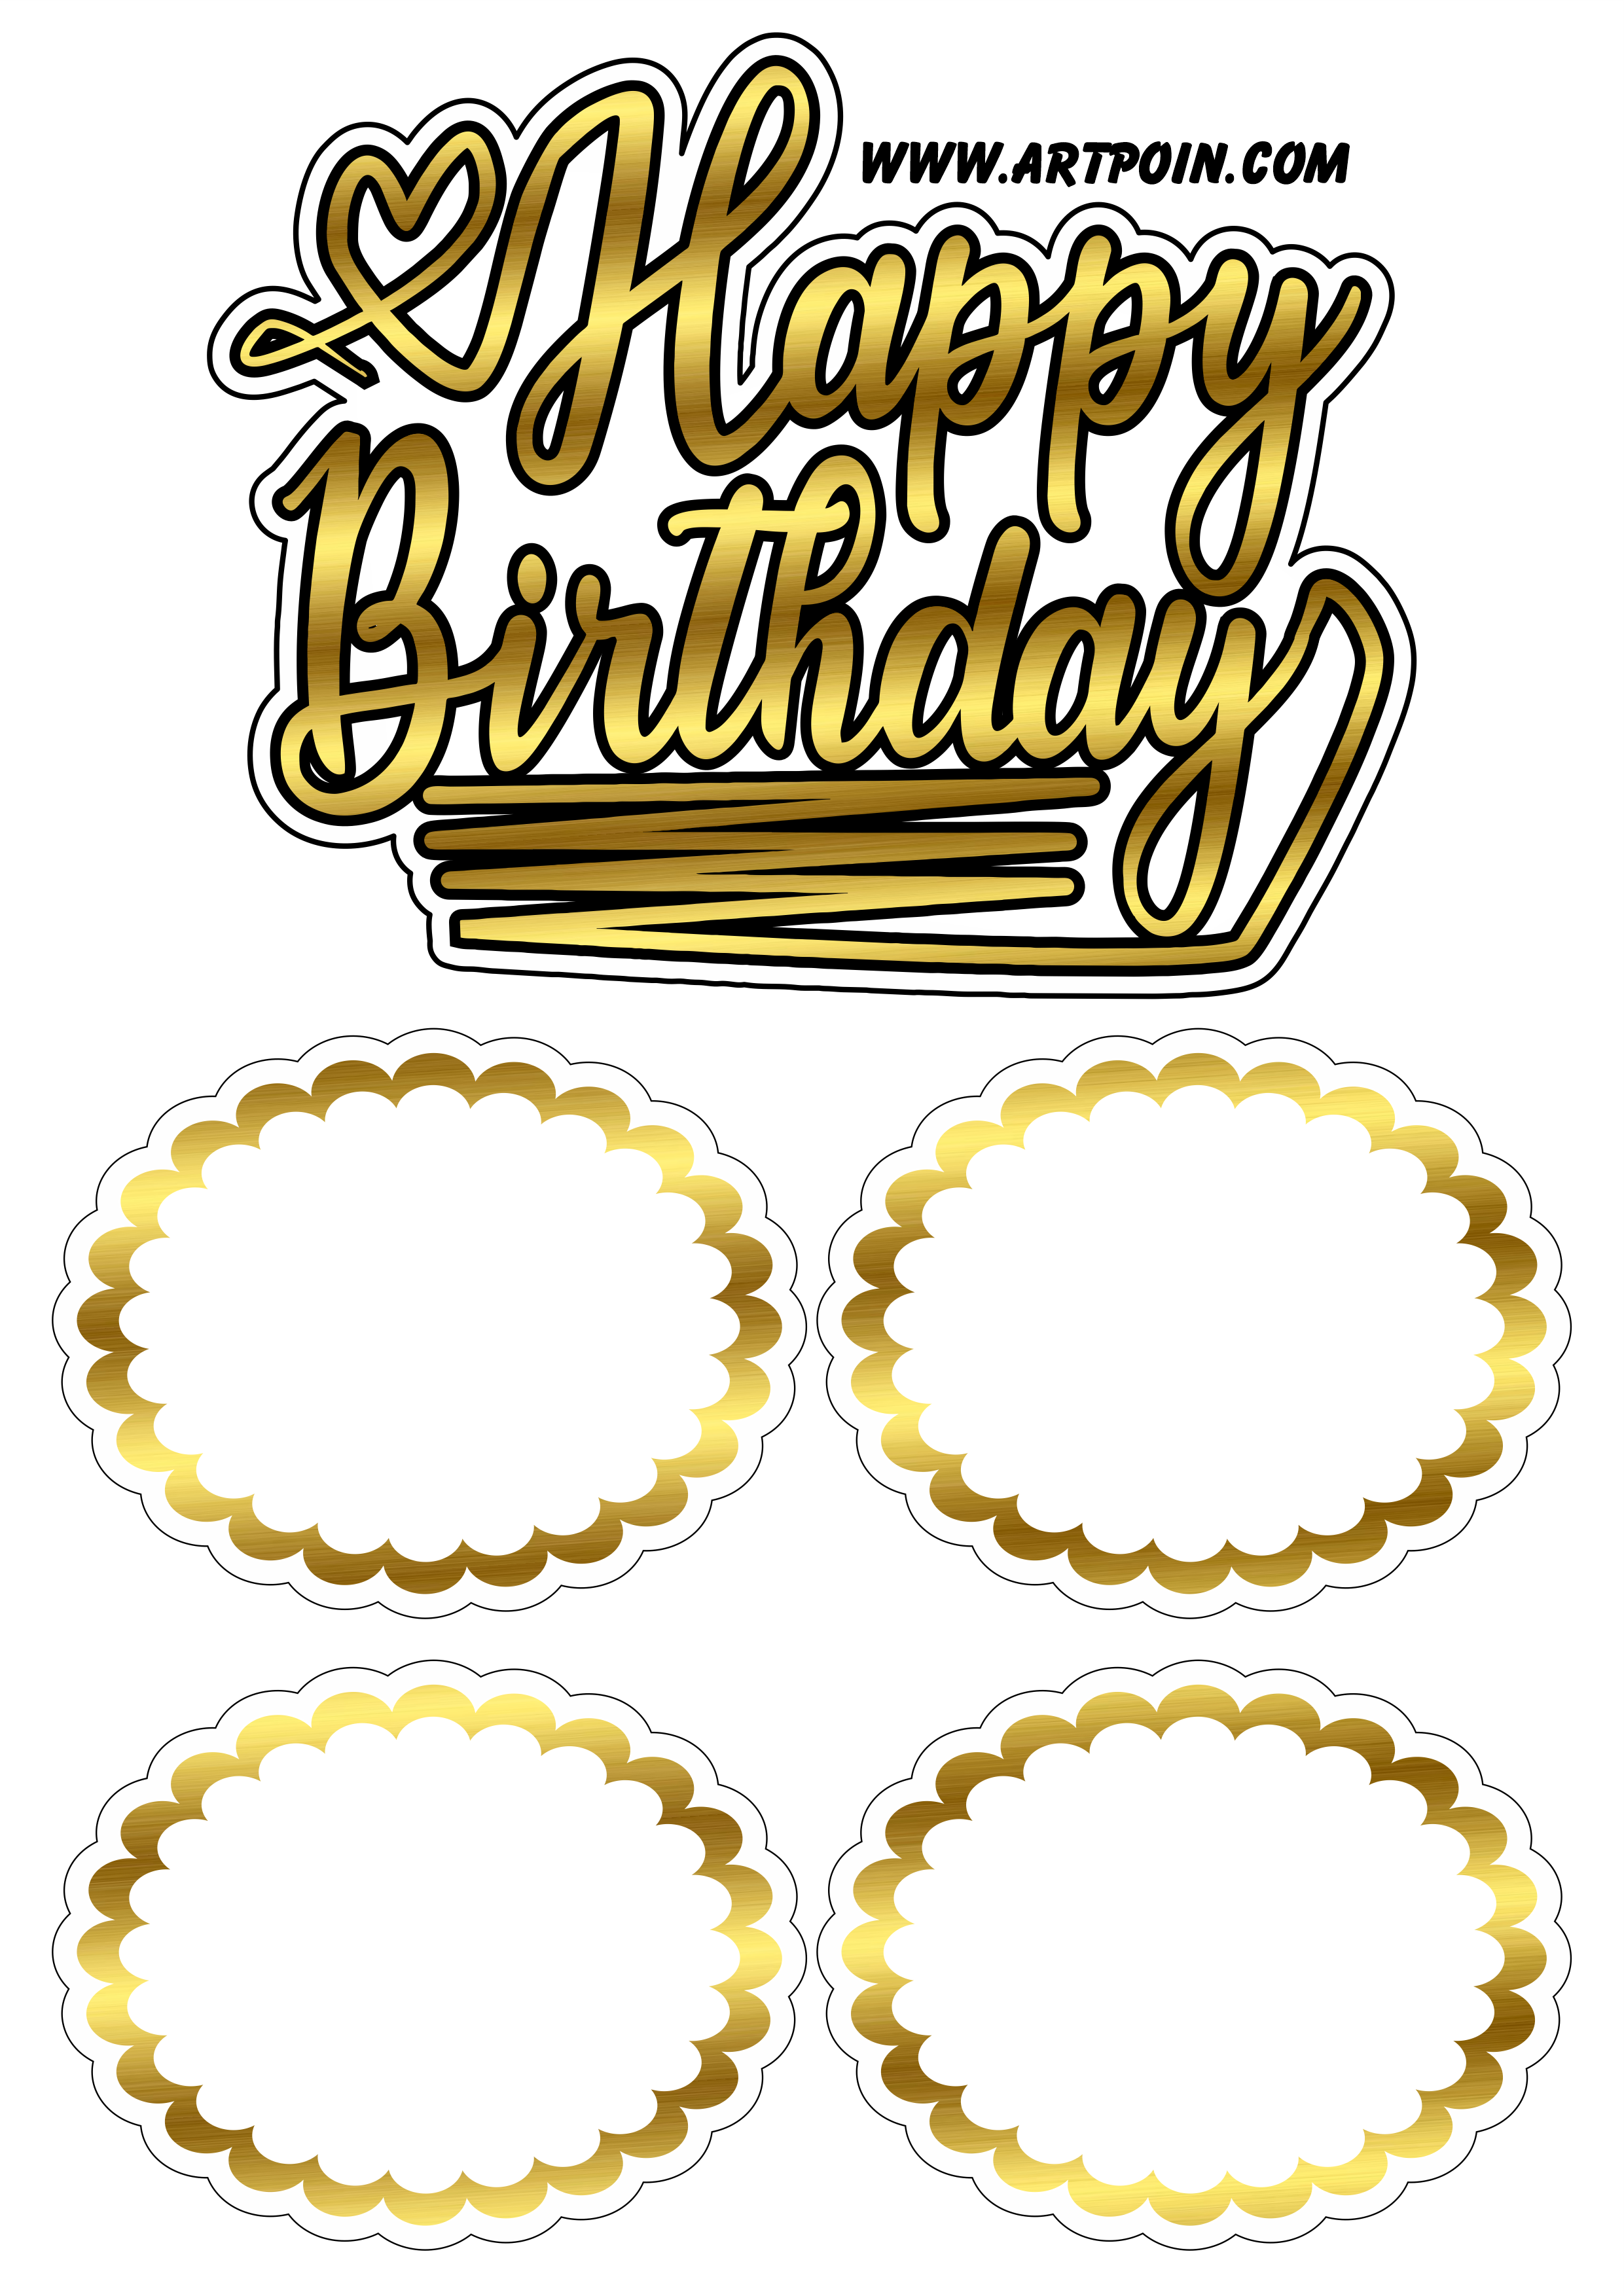 Happy birthday decoração para bolo dourado pronto para editar e imprimir png